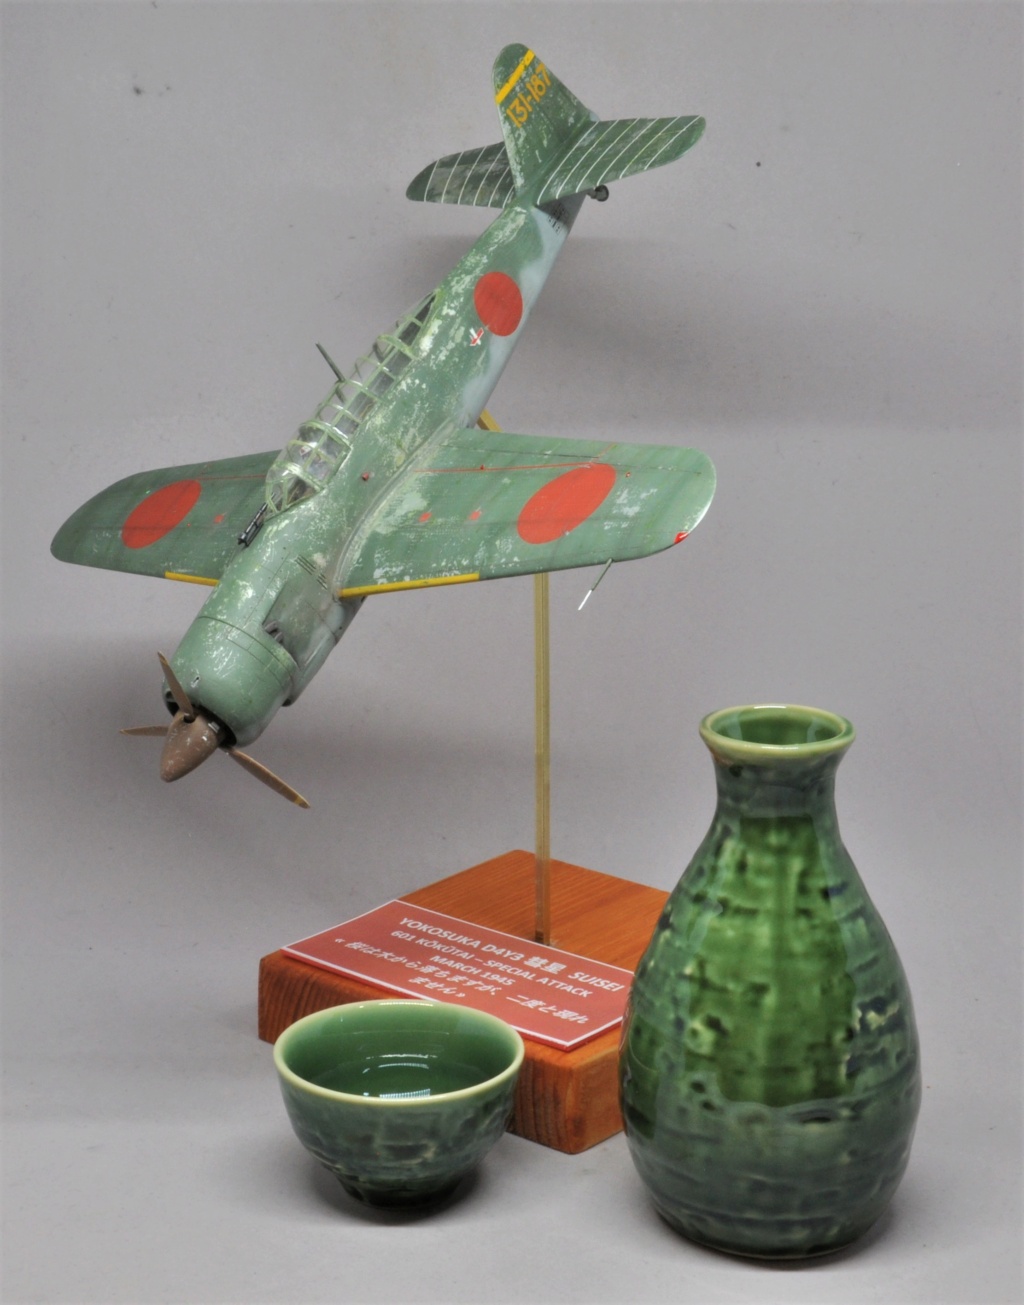 [Concours Fighter] Yokosuka D4Y3 Suisei [FineMolds 1/48°] de Le renard du désert - Page 2 Dsc_2310